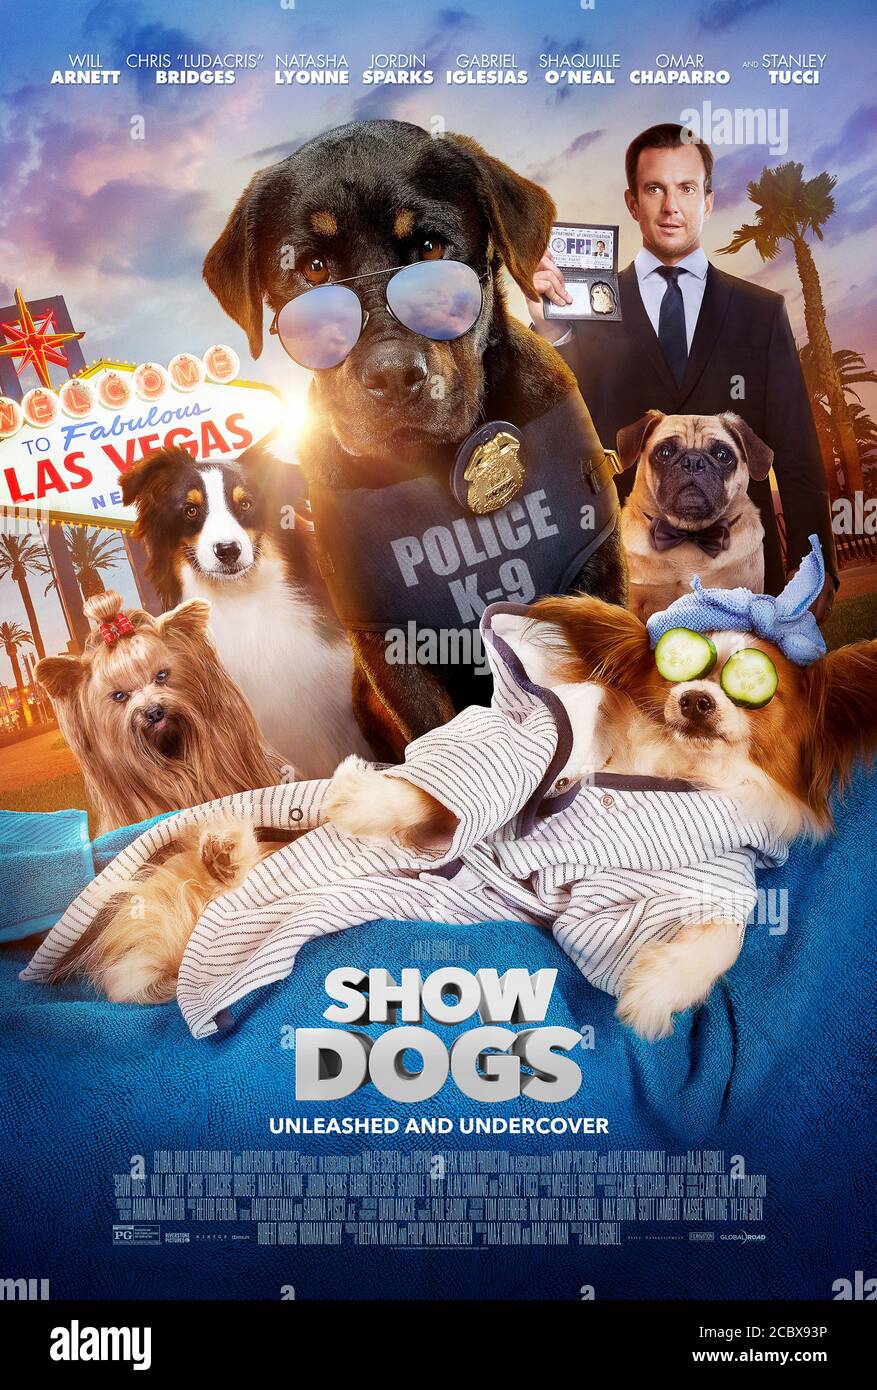 Show dogs (2018) réalisé par Raja Gosnell et mettant en vedette Wwill Arnett, Ludacris, Natasha Lyonne, Jordin Sparks Thomas et Stanley Tucci. Max le chien de police est couvert lors d'un spectacle canin. Banque D'Images